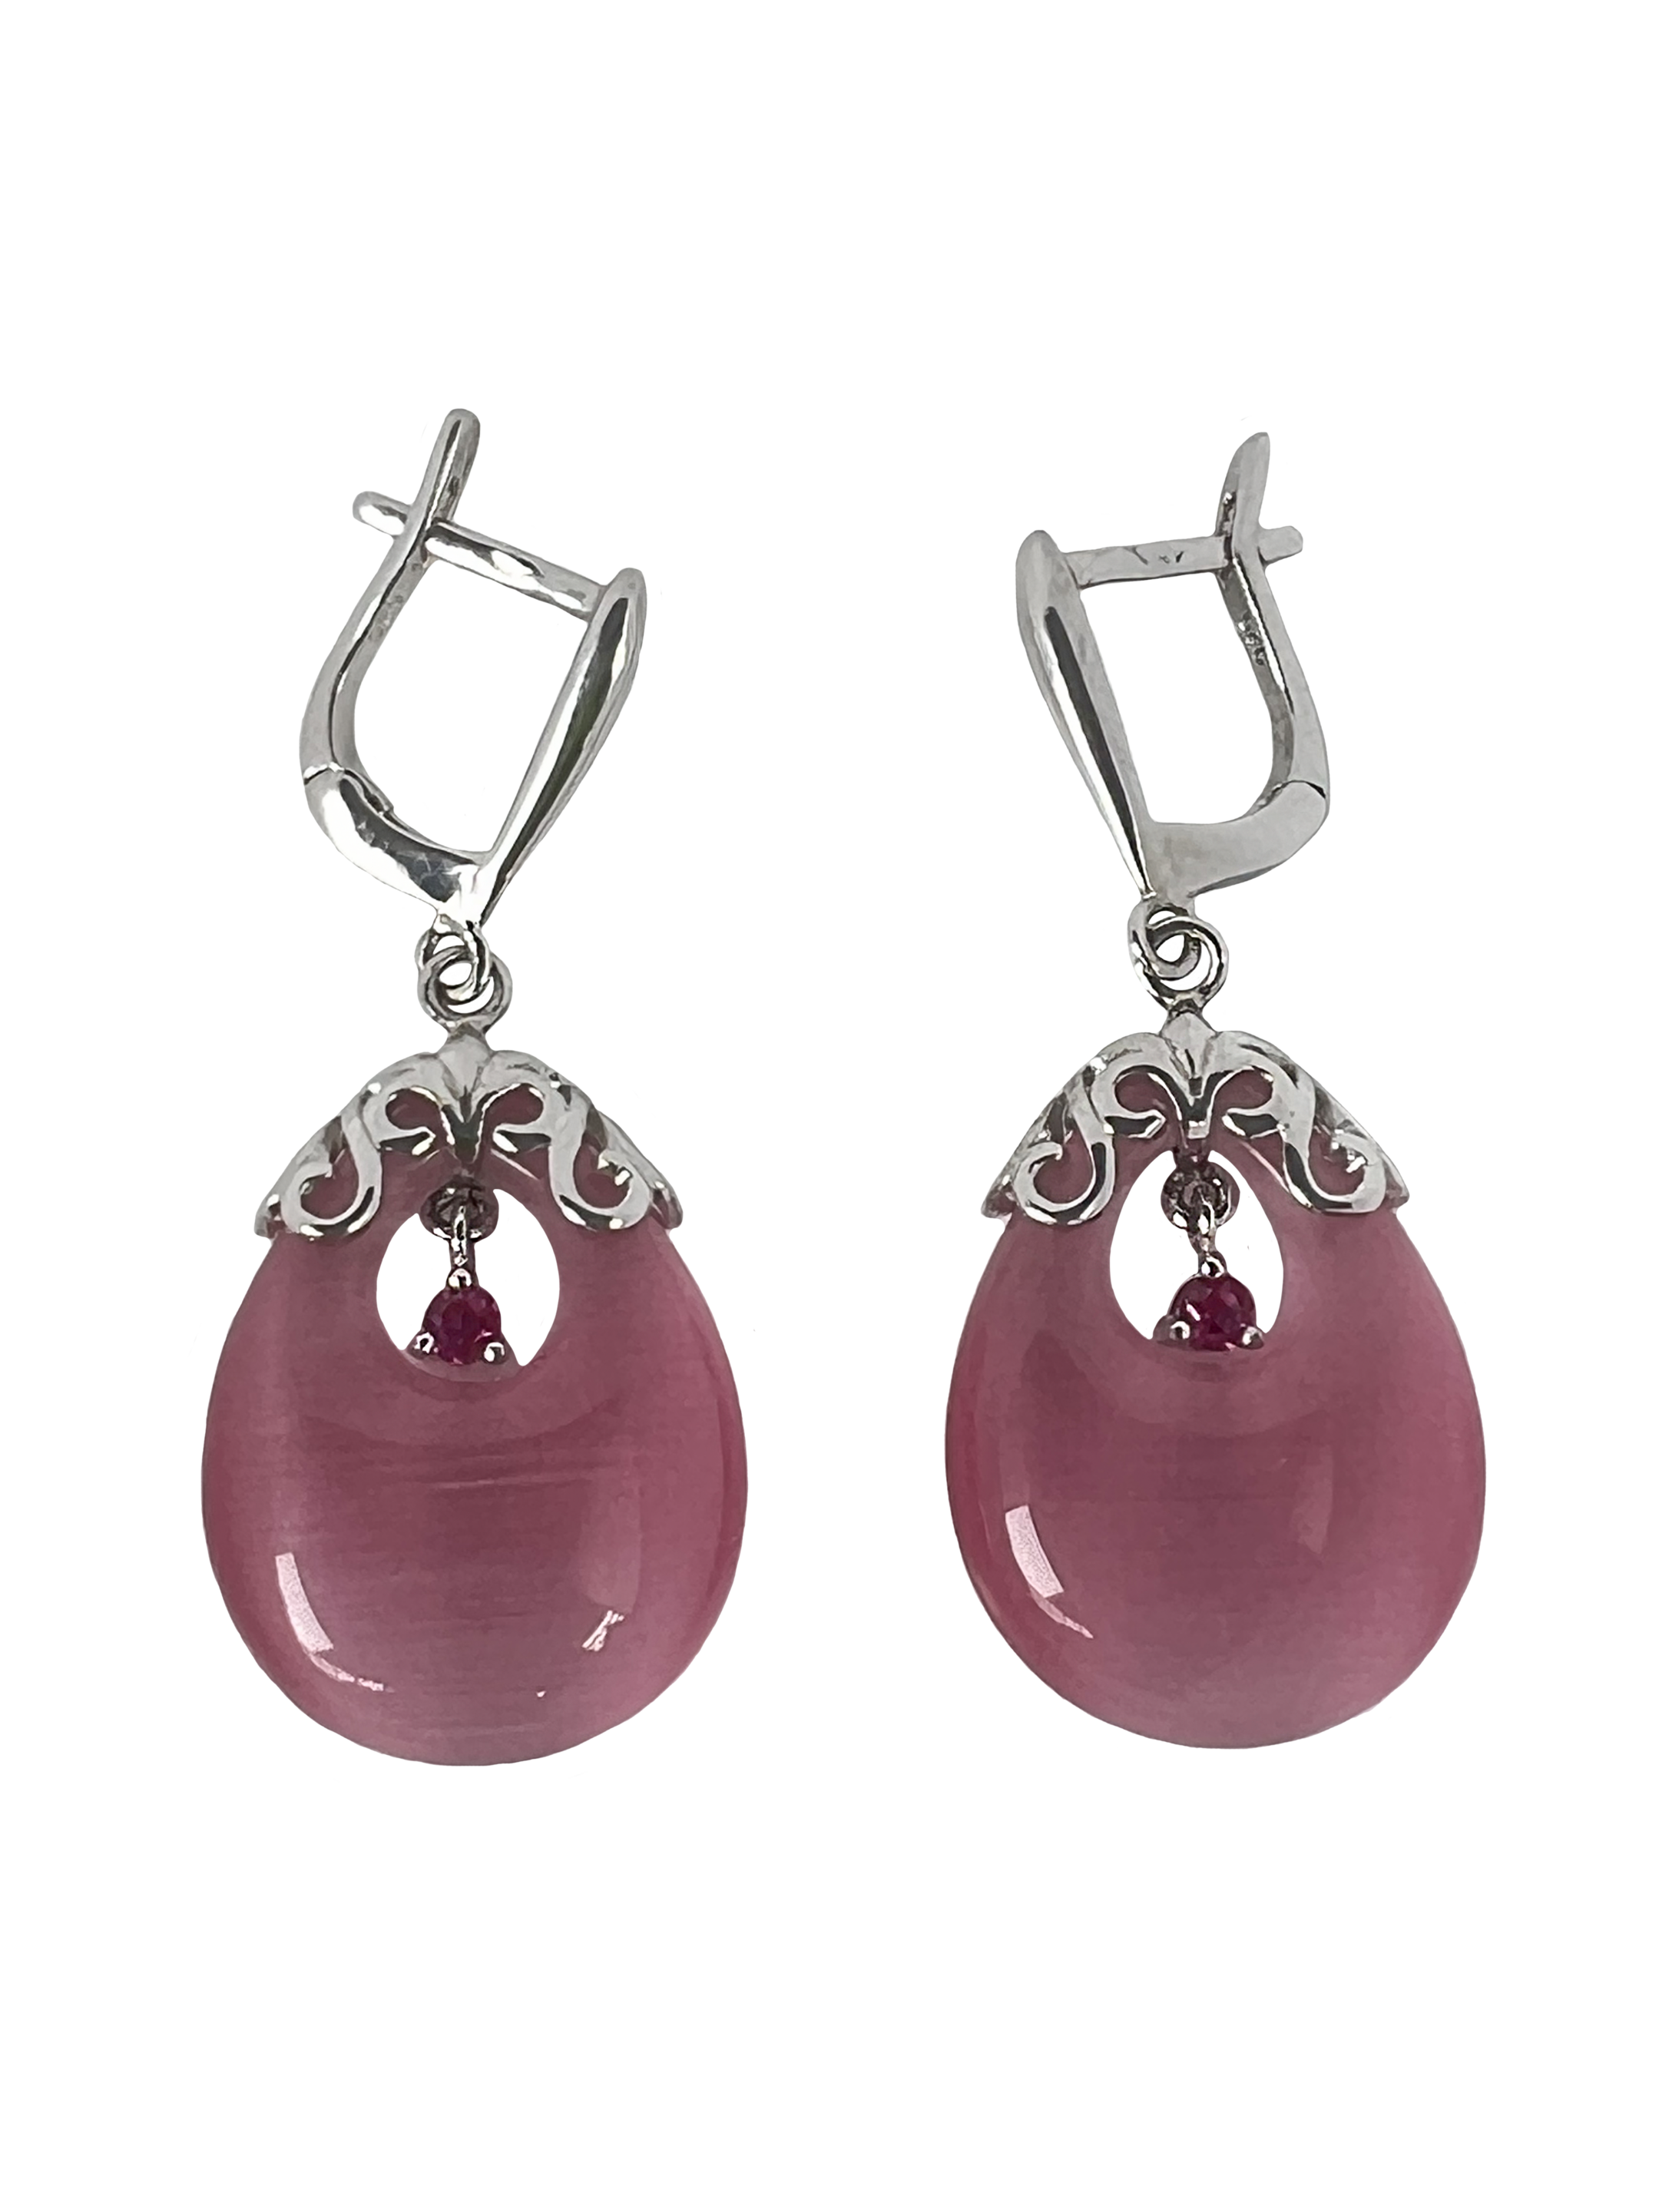 Ασημένια κρεμαστά σκουλαρίκια με σχέδια και ροζ στοιχεία